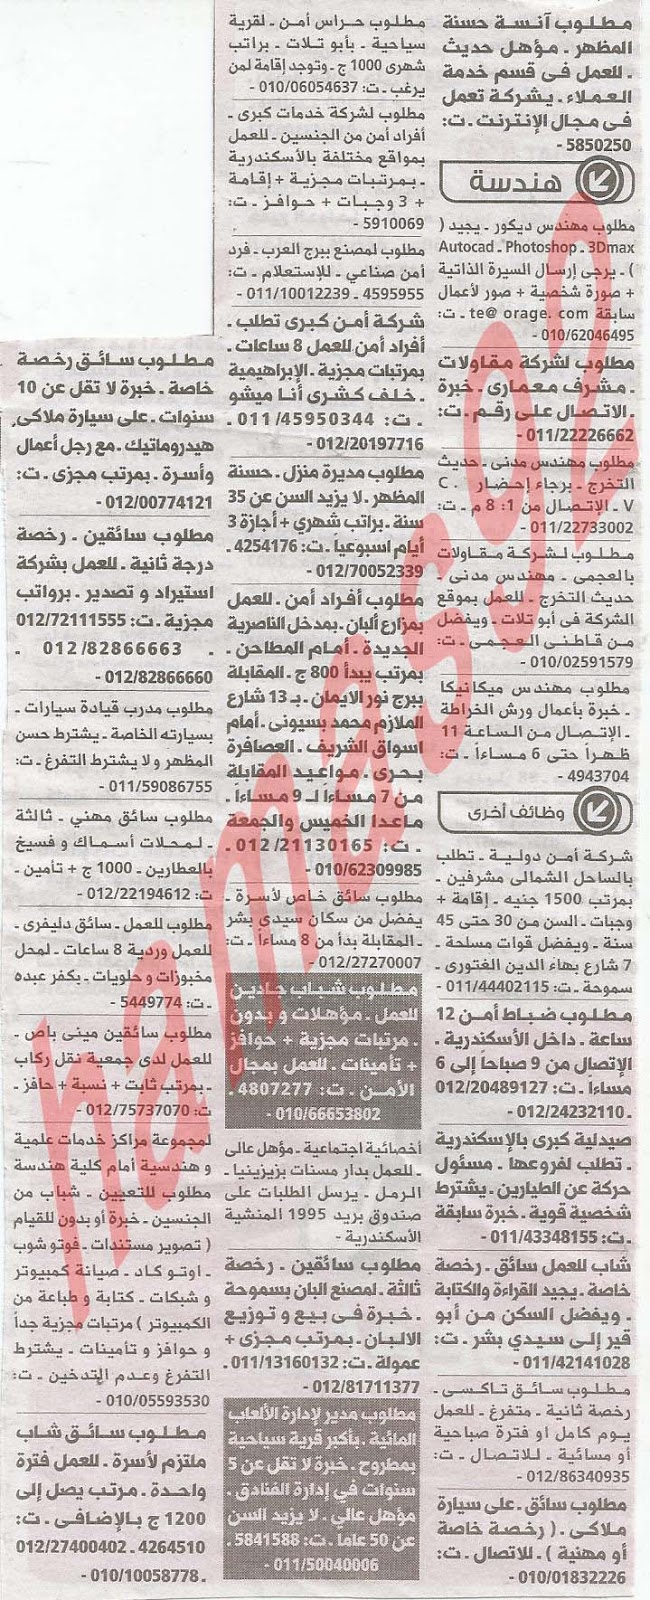 وظائف جريدة الوسيط الاسكندرية الاثنين 11/2/2013 %D9%88+%D8%B3+%D8%B3+7